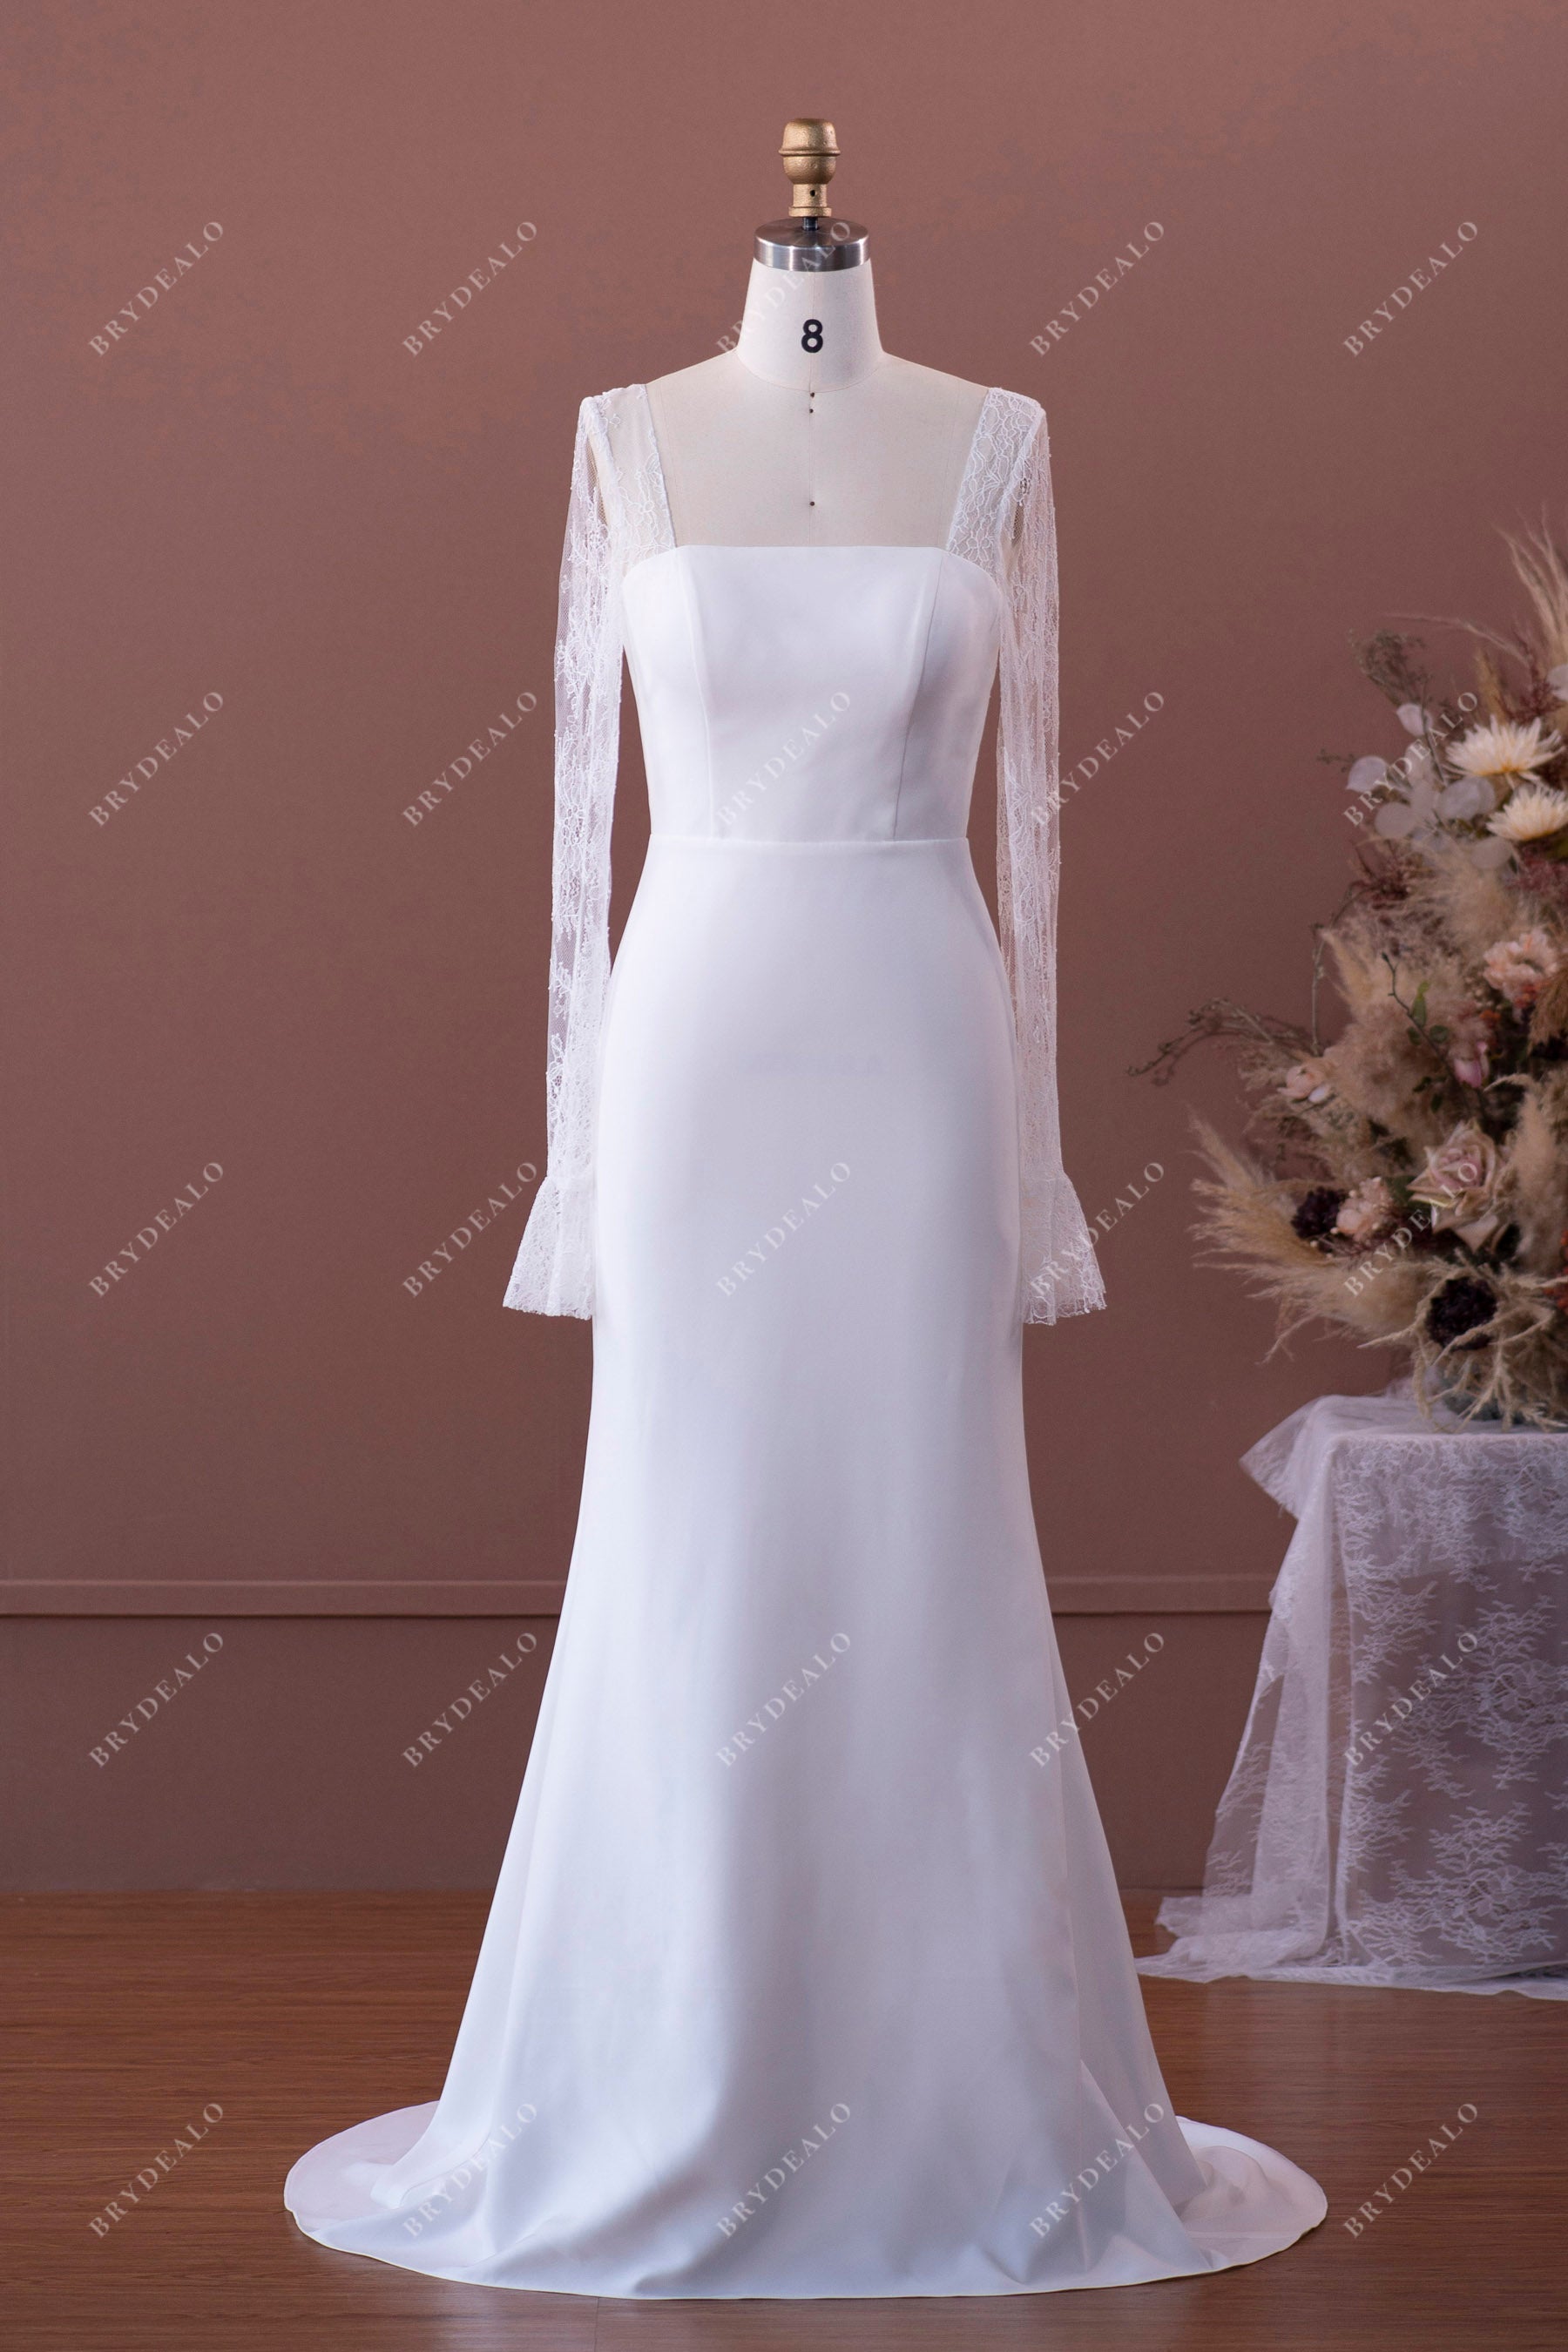 Sheer Lace Sleeved Elegant Crepe Mermaid Wedding Dress